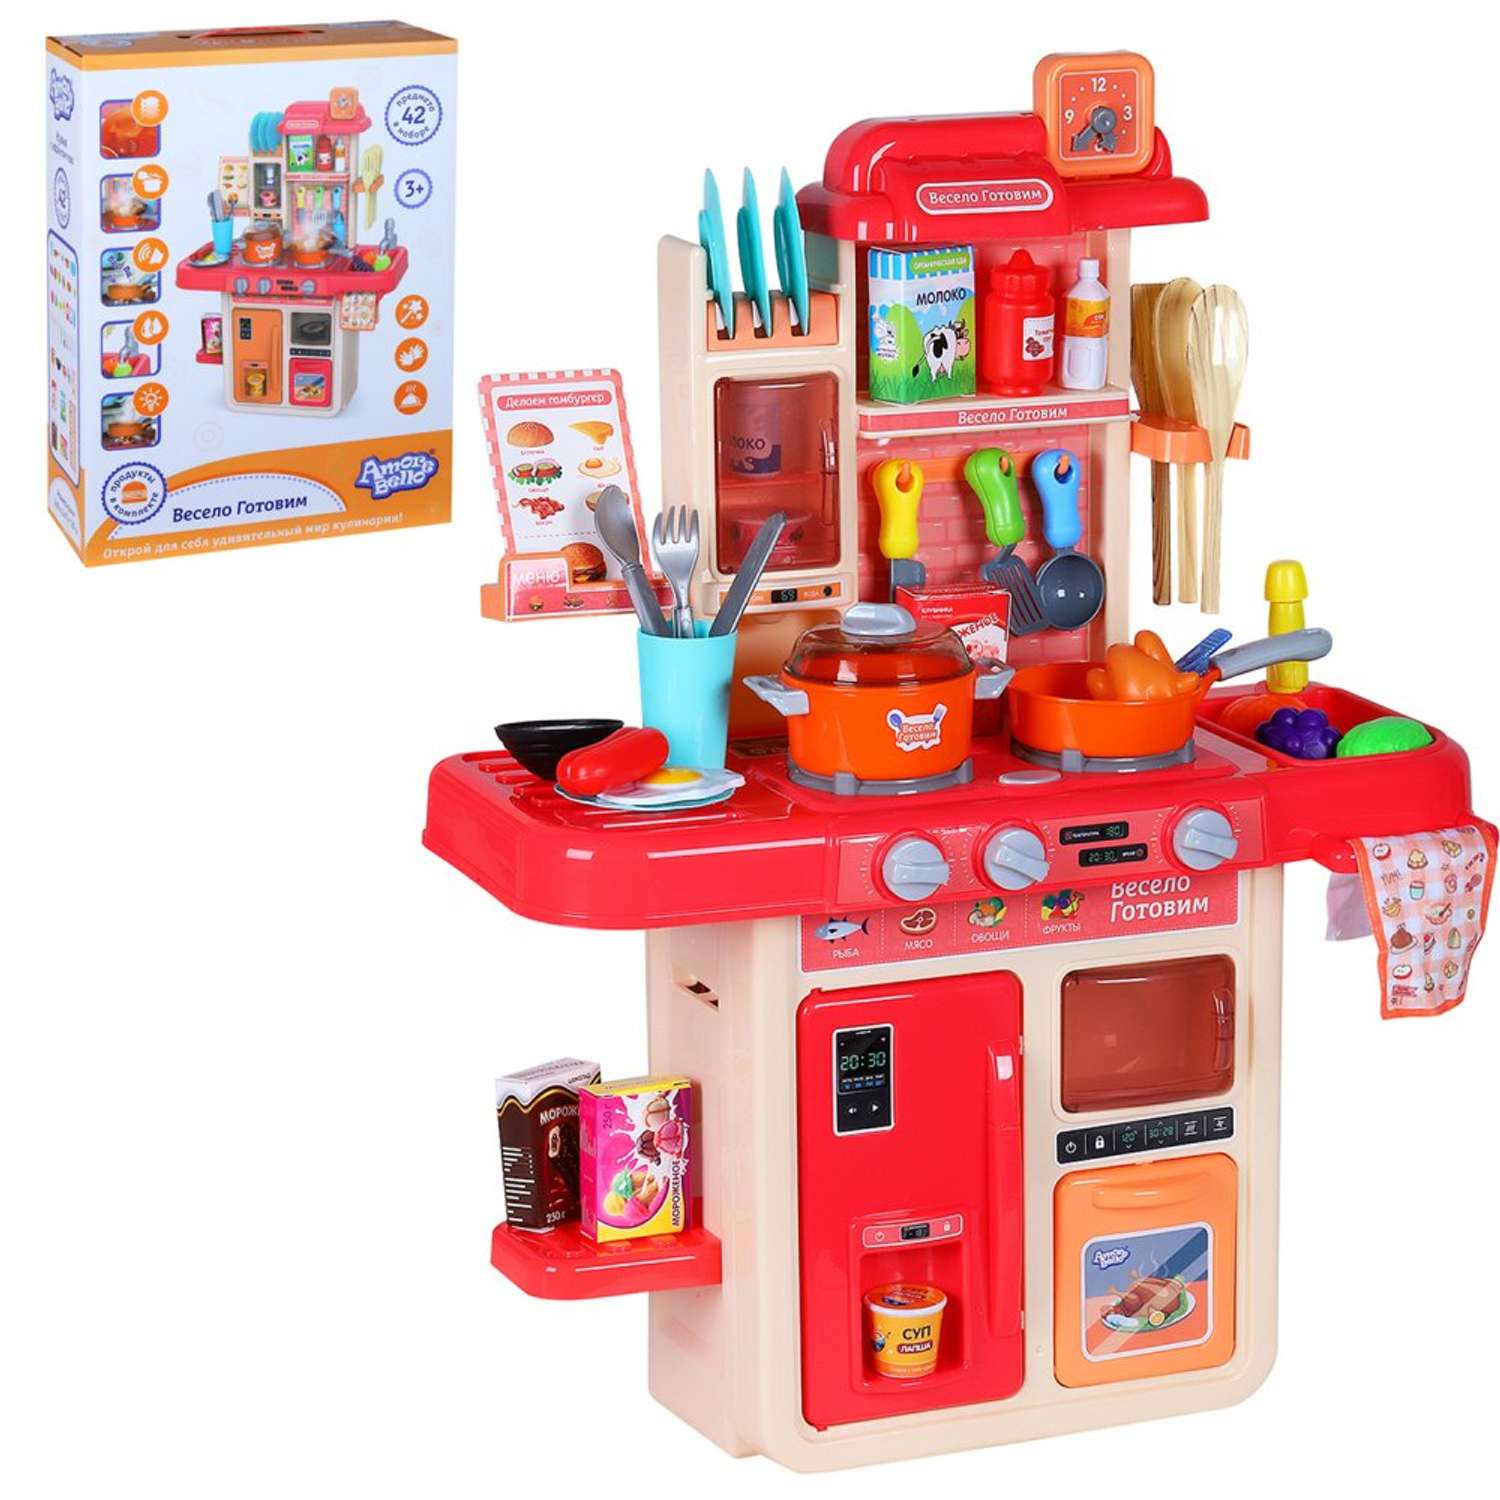 Игровой набор детский AMORE BELLO Детская кухня с паром и кран с водой игрушечные продукты и посуда 42 предмета JB0208741 - фото 9